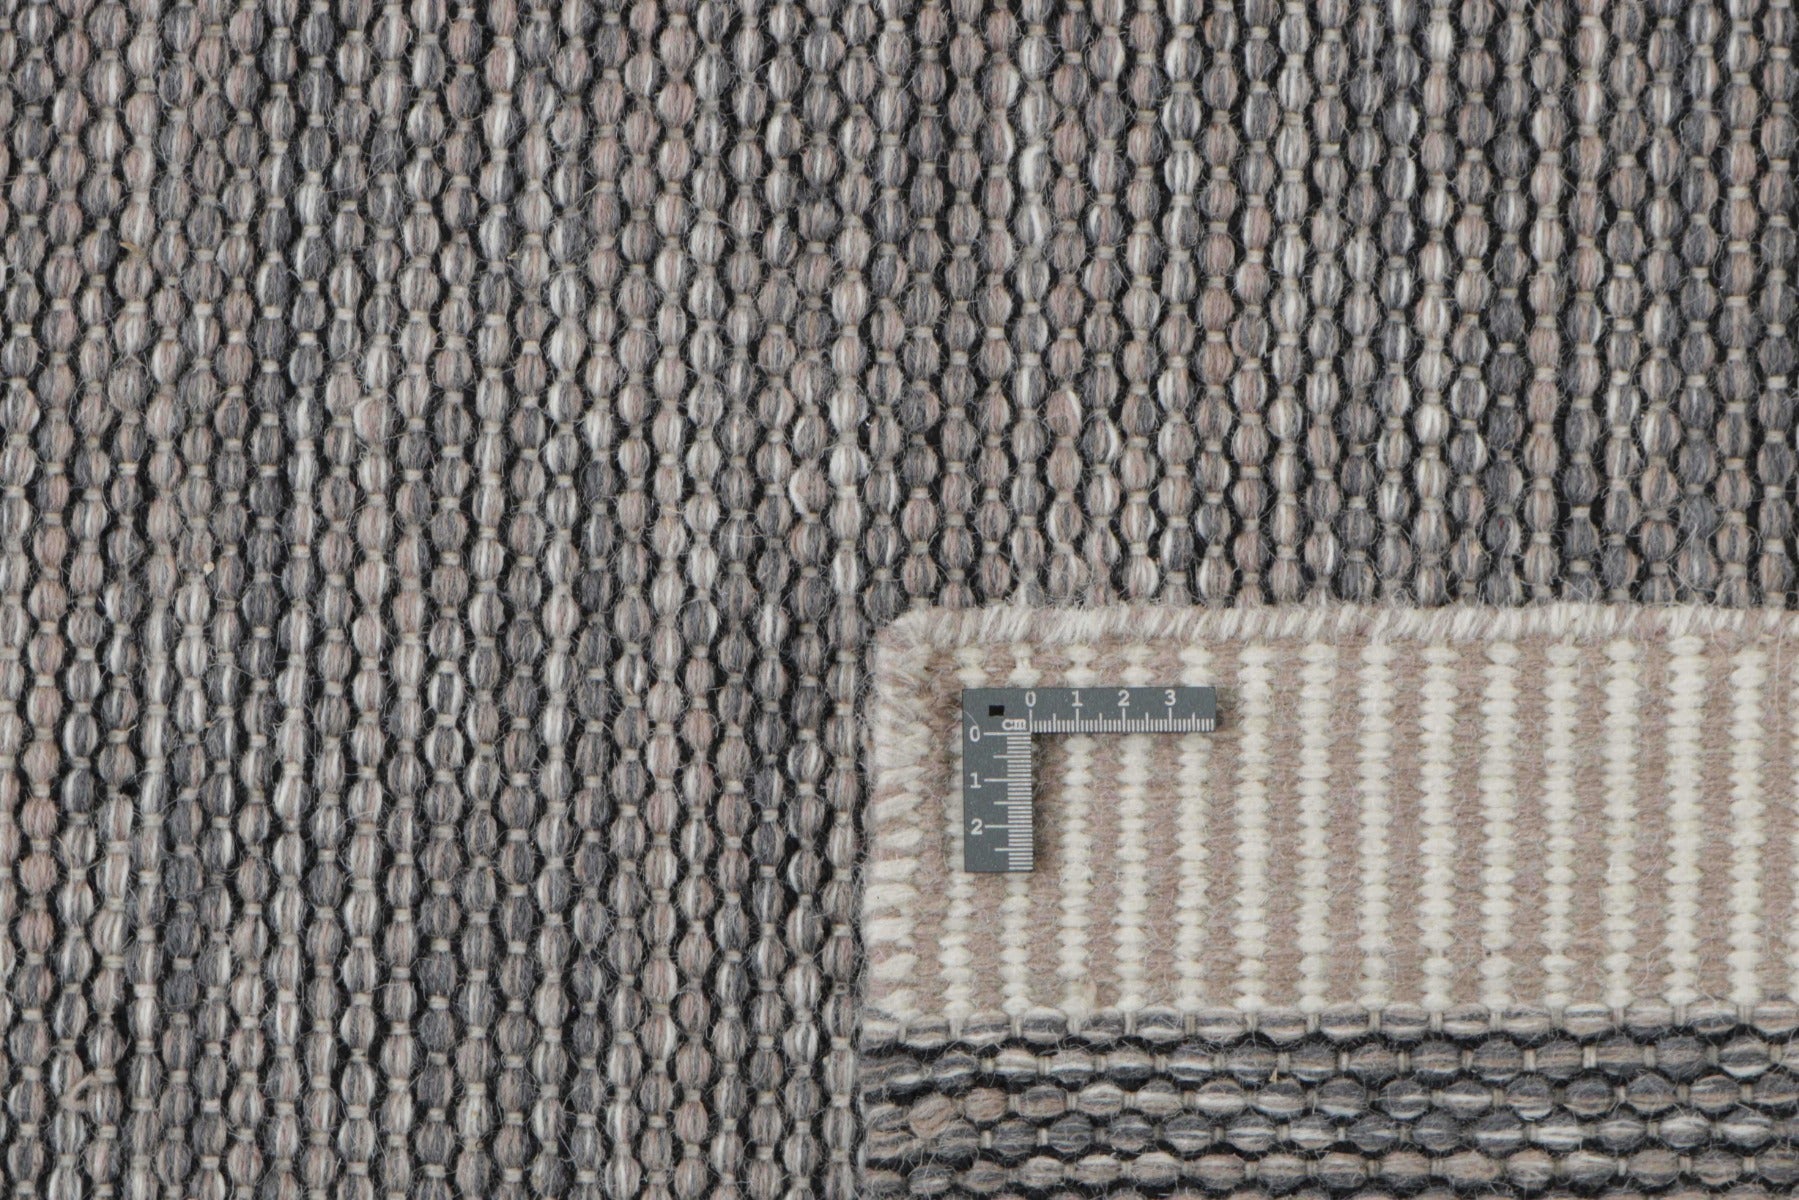 plain grey and beige flatweave rug
